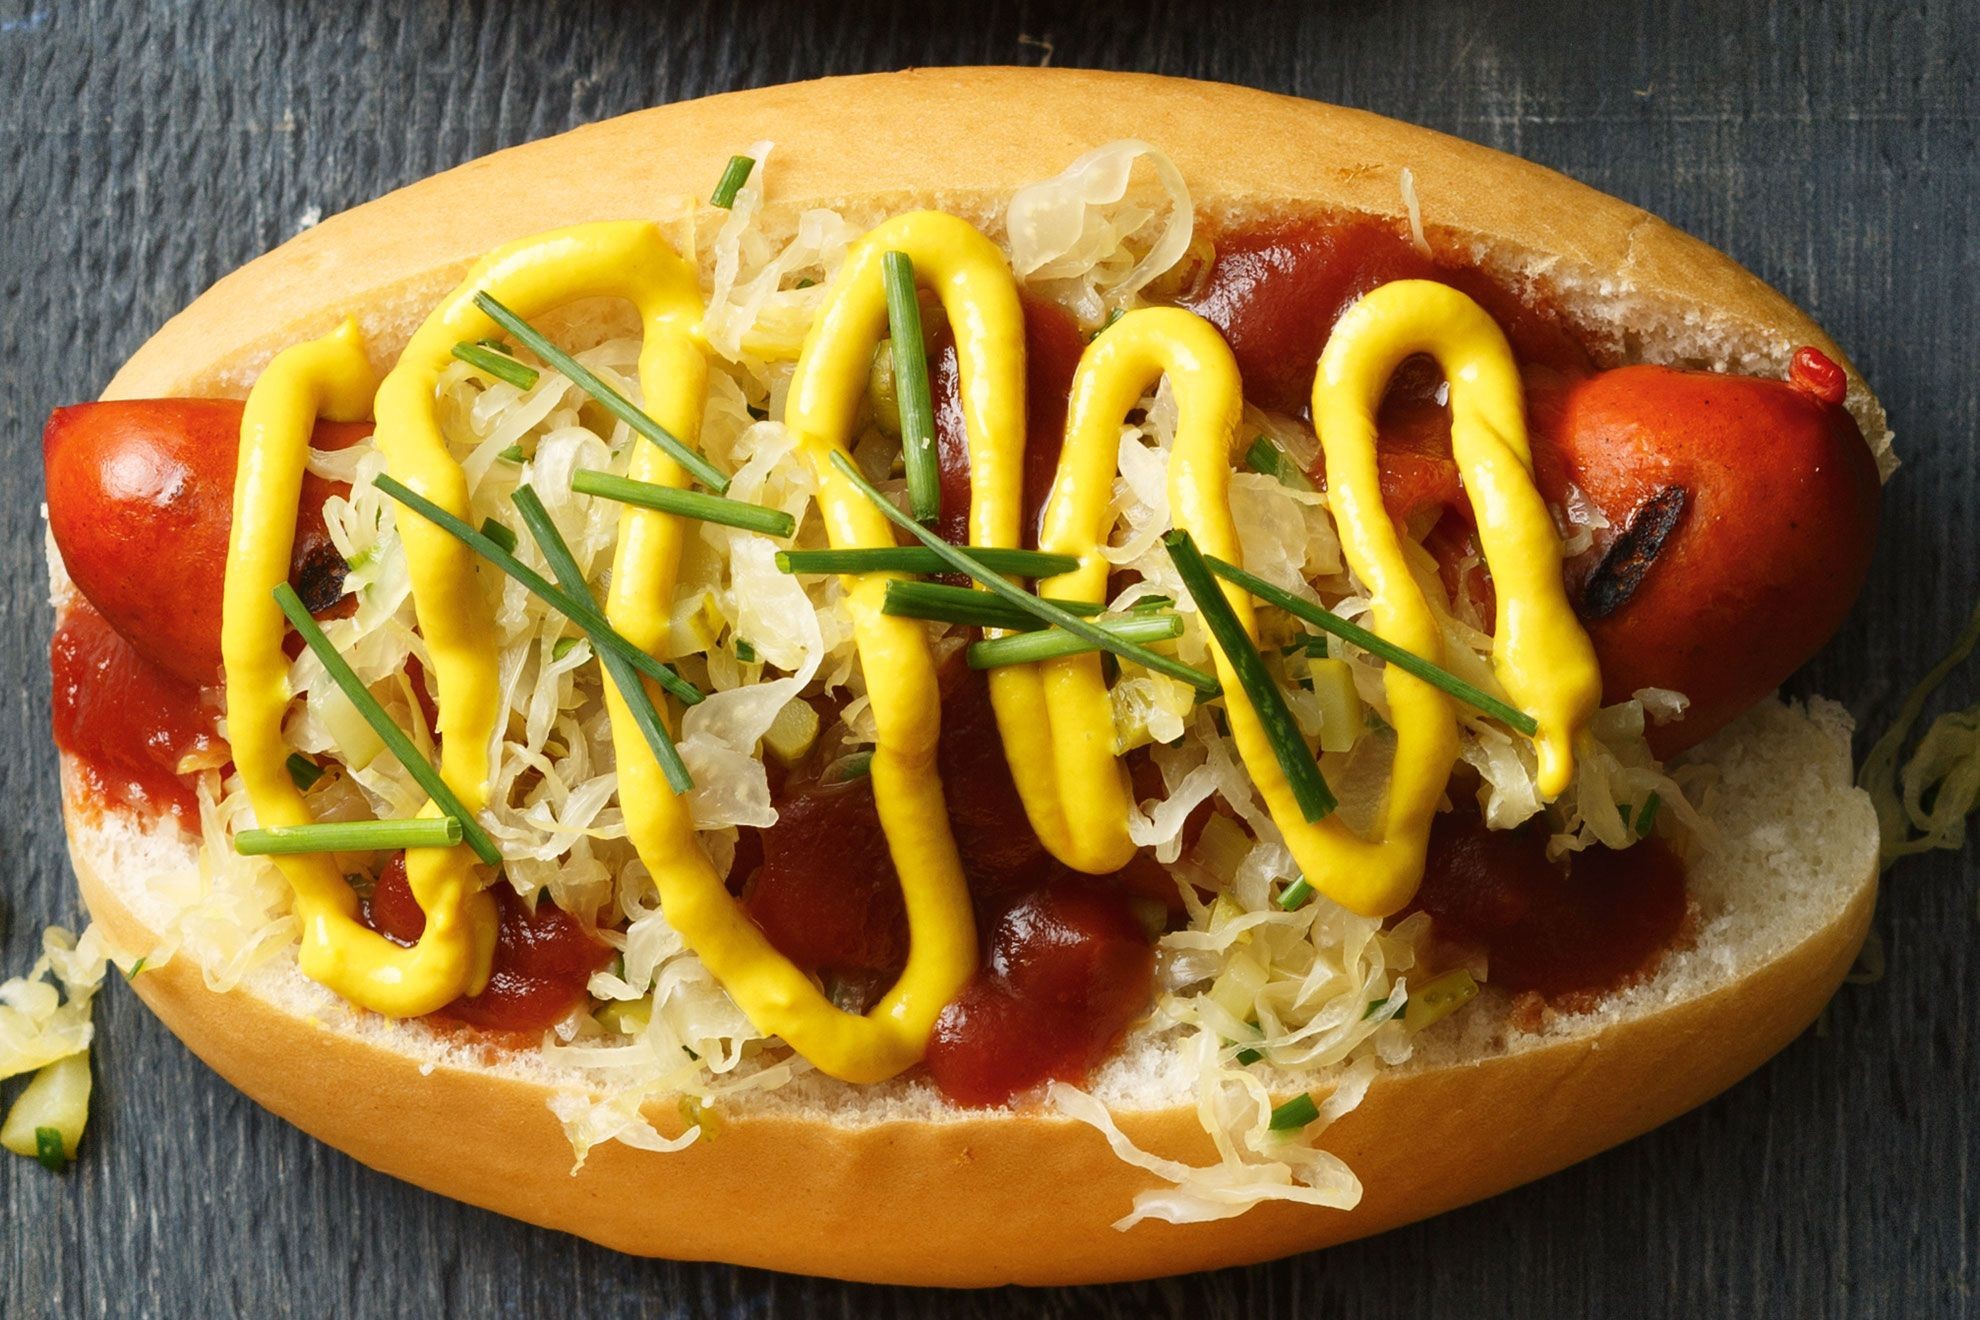 Sauerkraut, Pickle And Mustard Hot Dogs - Hot Dog With Sauerkraut , HD Wallpaper & Backgrounds